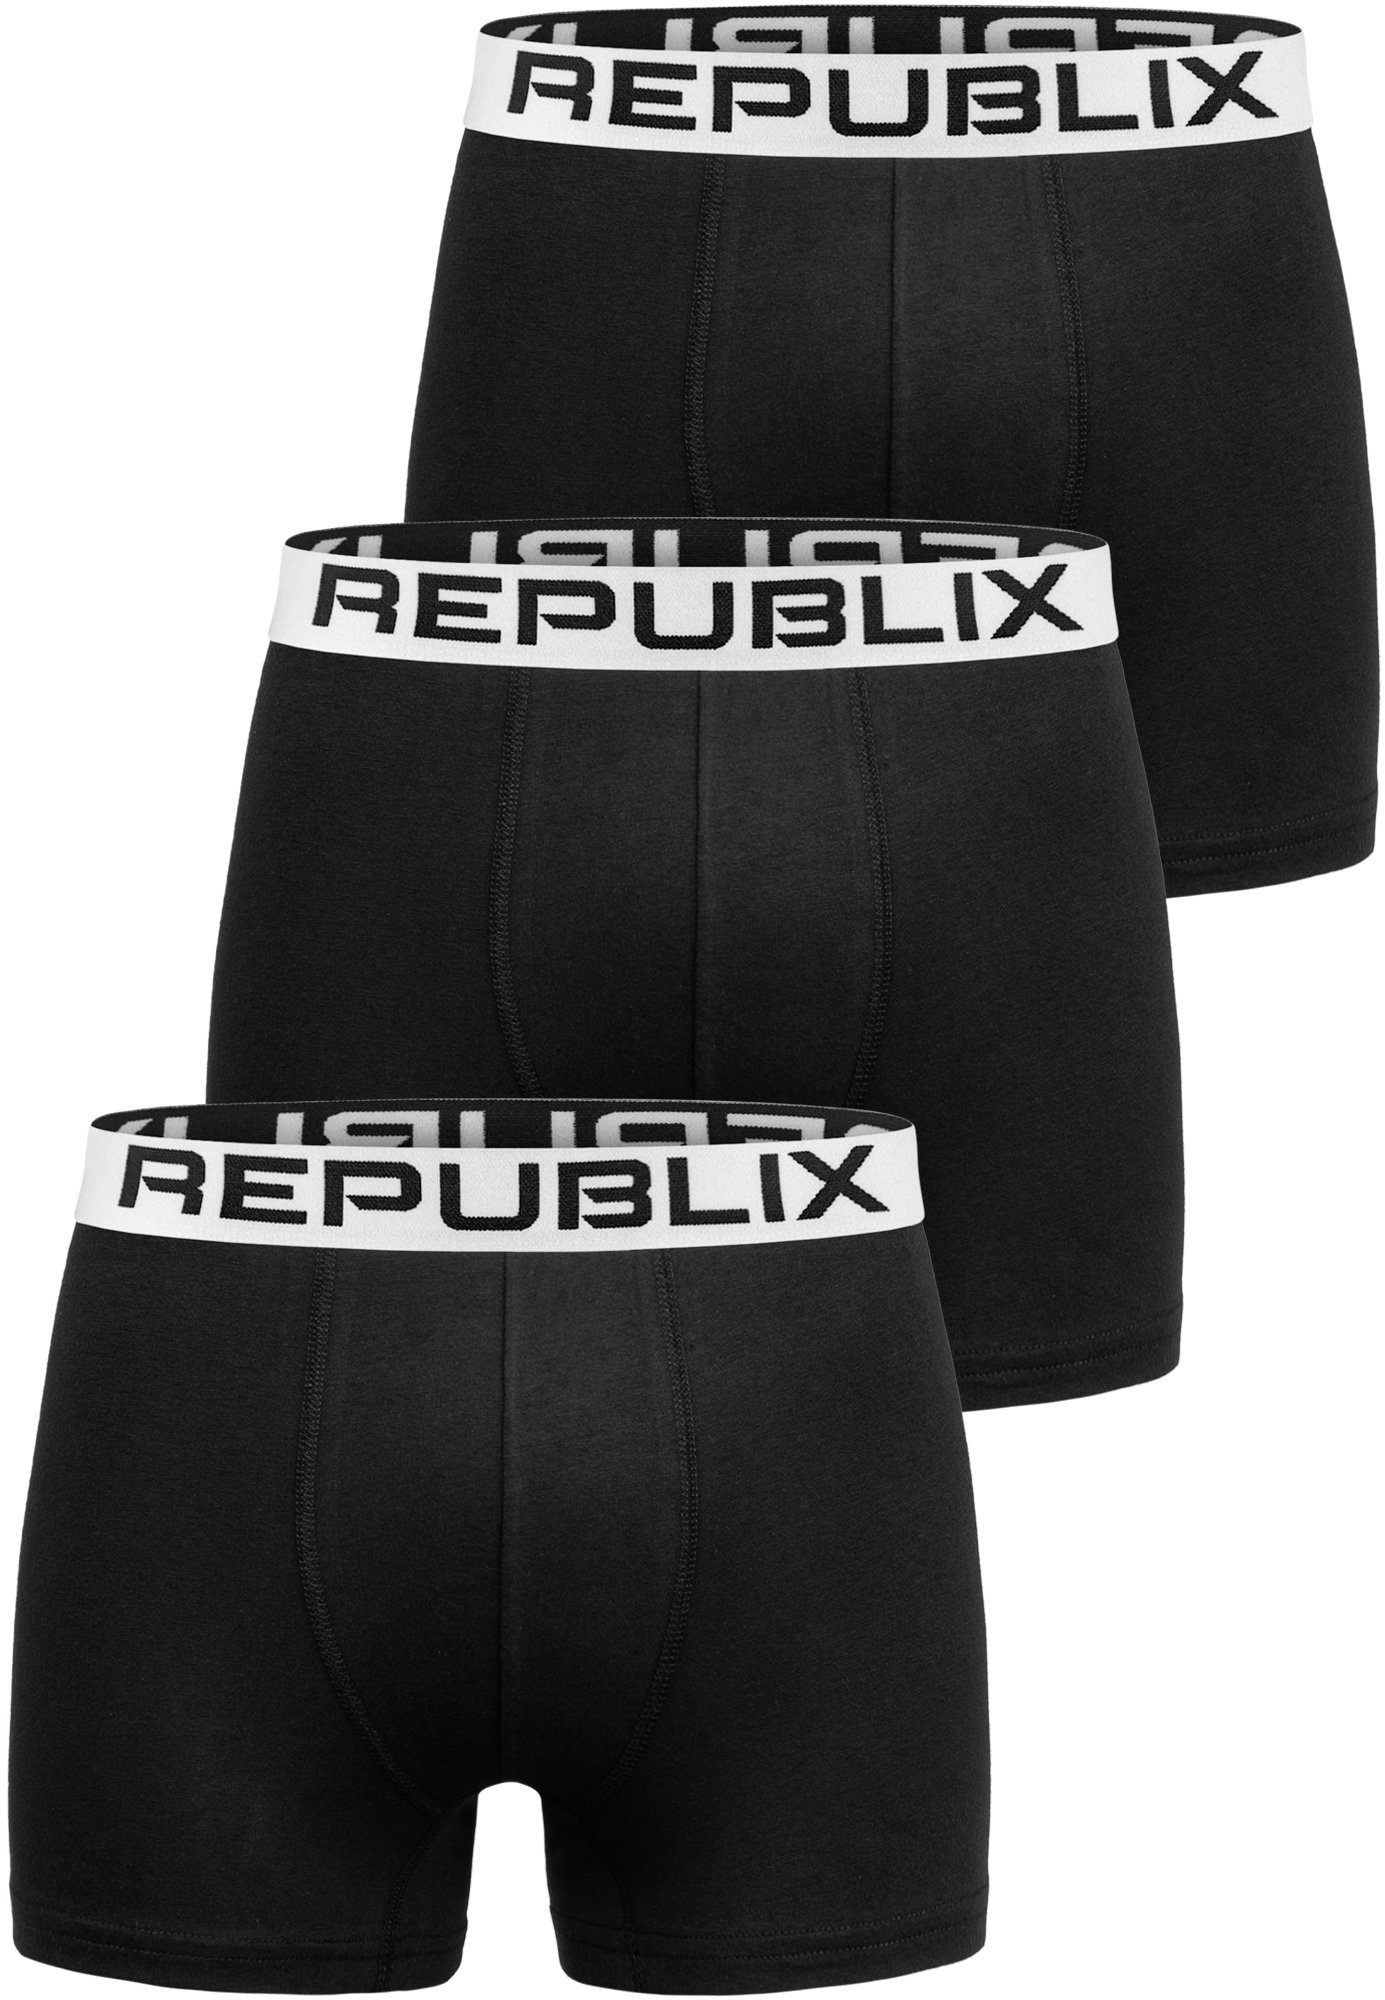 REPUBLIX DON Unterhose Baumwolle (3er-Pack) Boxershorts Unterwäsche Schwarz/Weiß Herren Männer